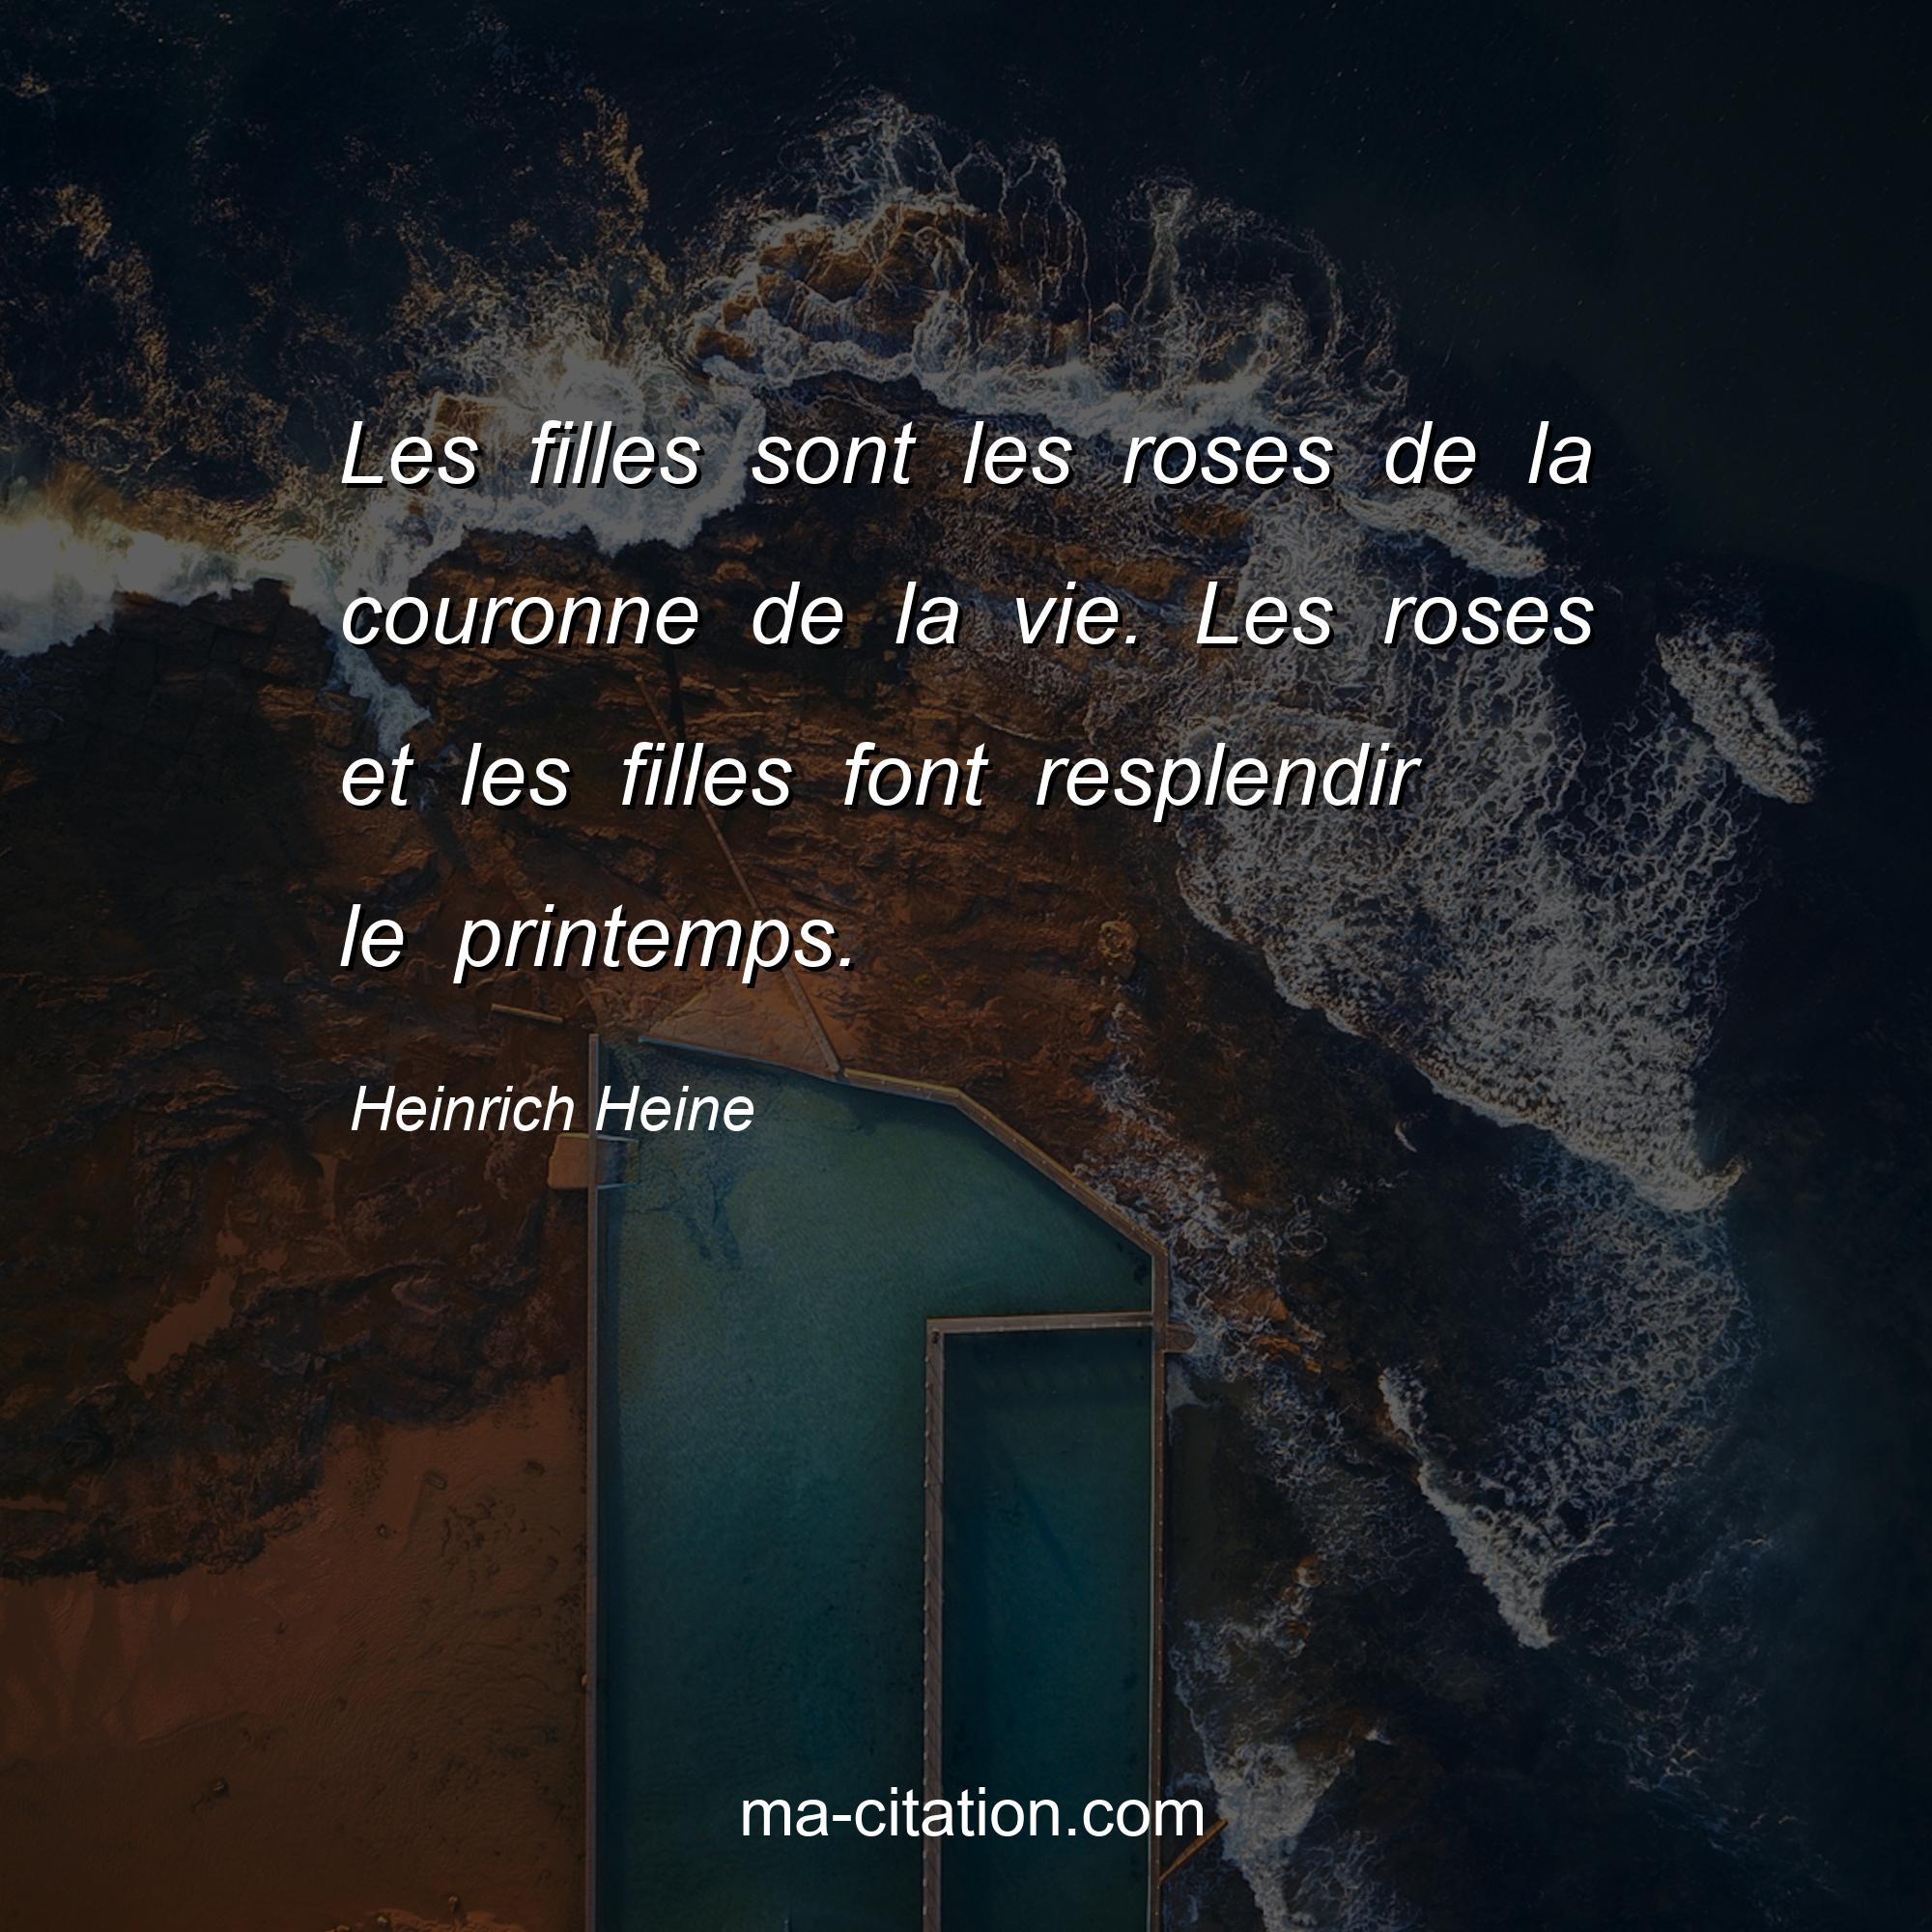 Heinrich Heine : Les filles sont les roses de la couronne de la vie. Les roses et les filles font resplendir le printemps.